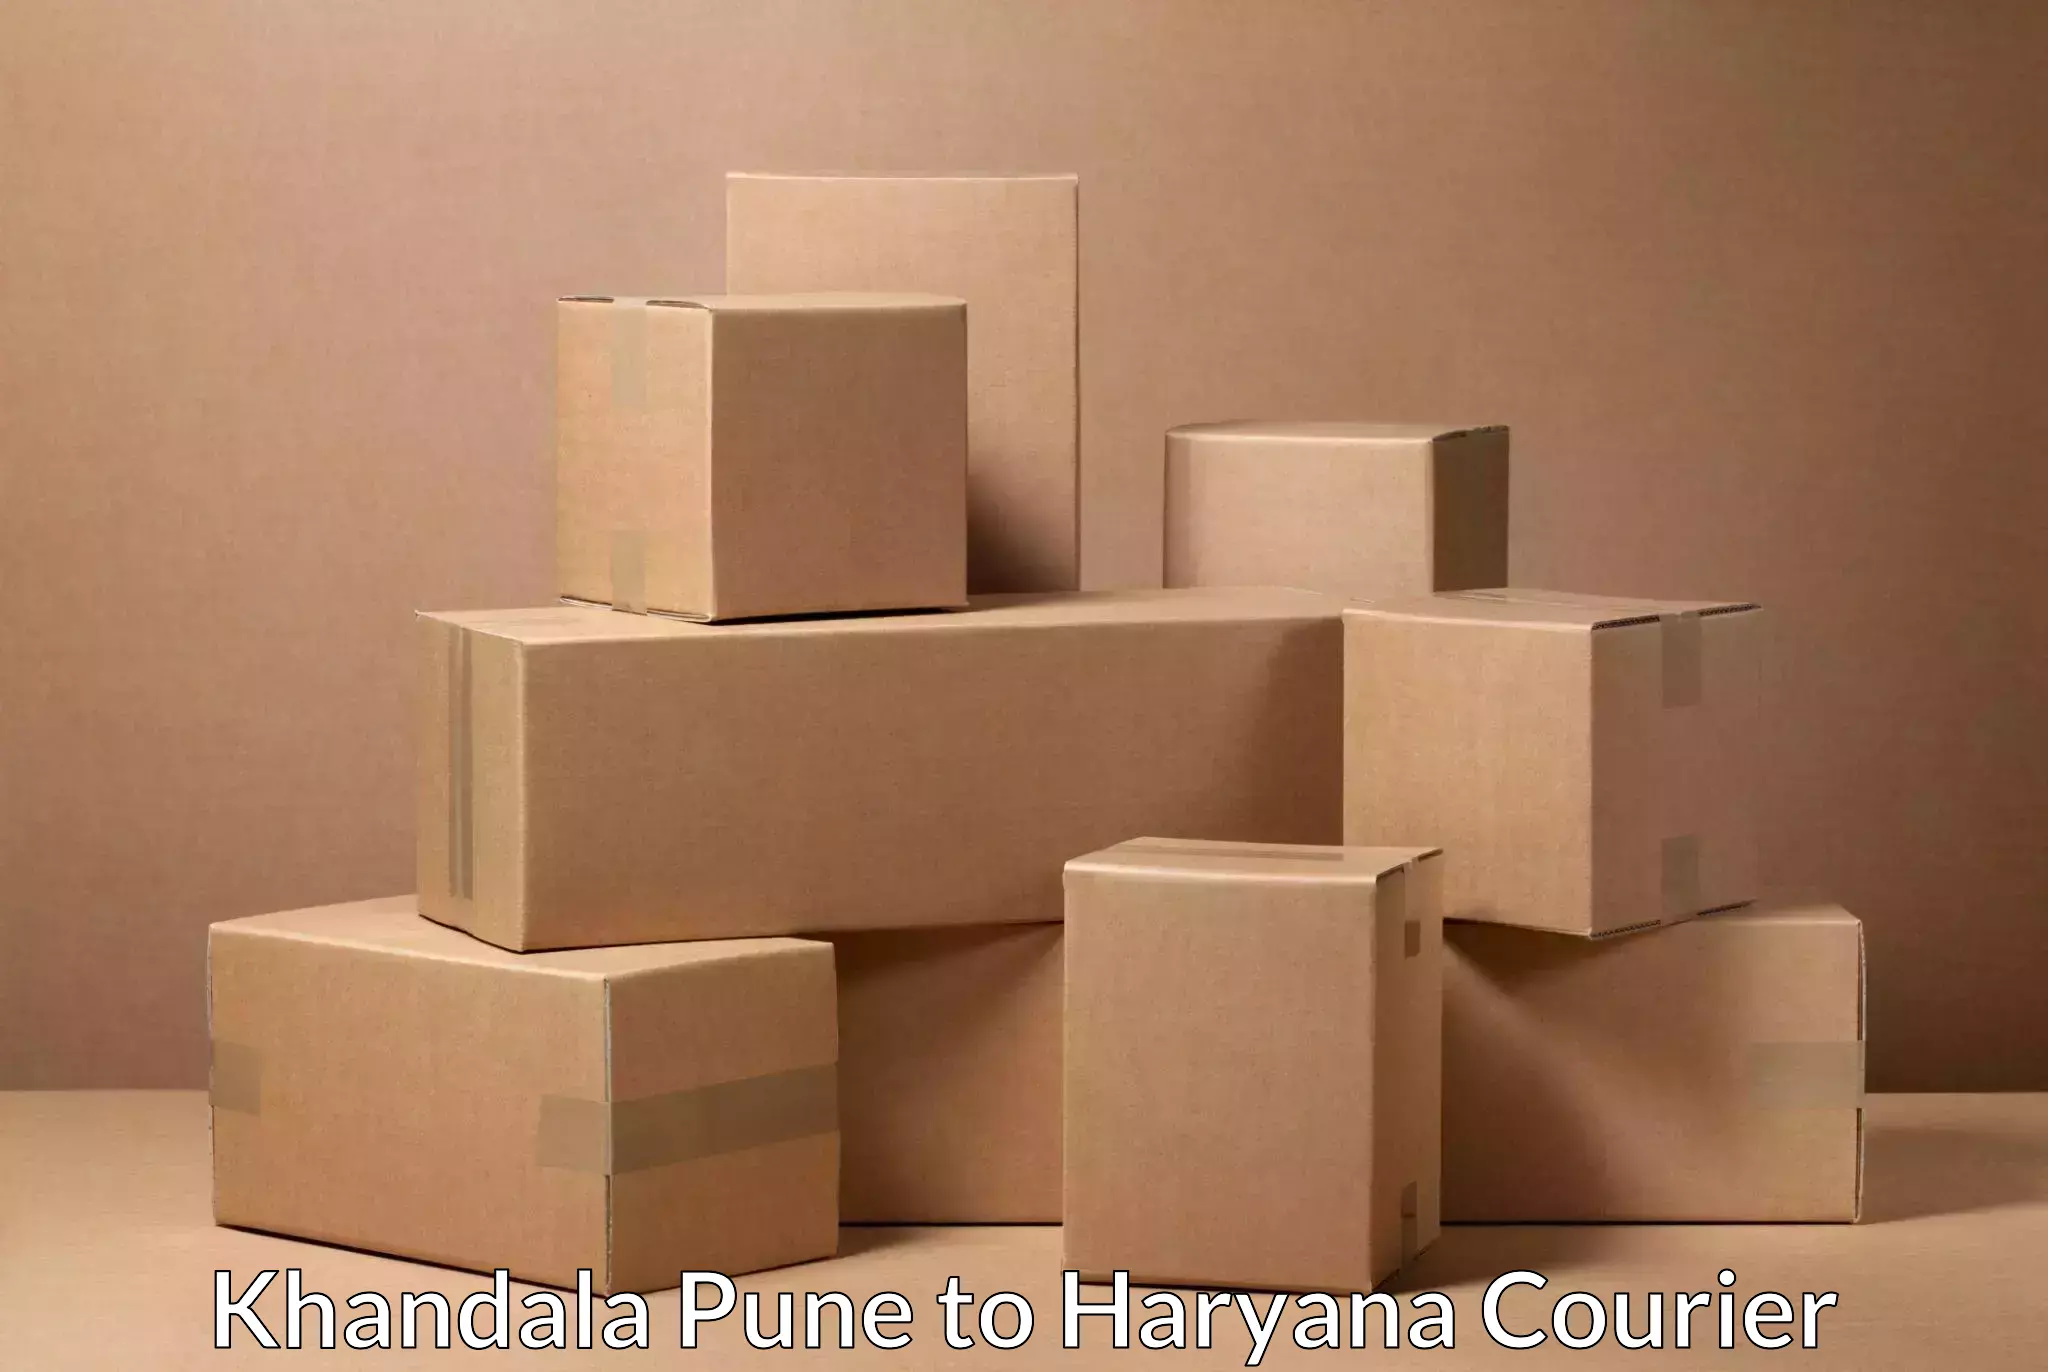 Urgent courier needs Khandala Pune to Hansi